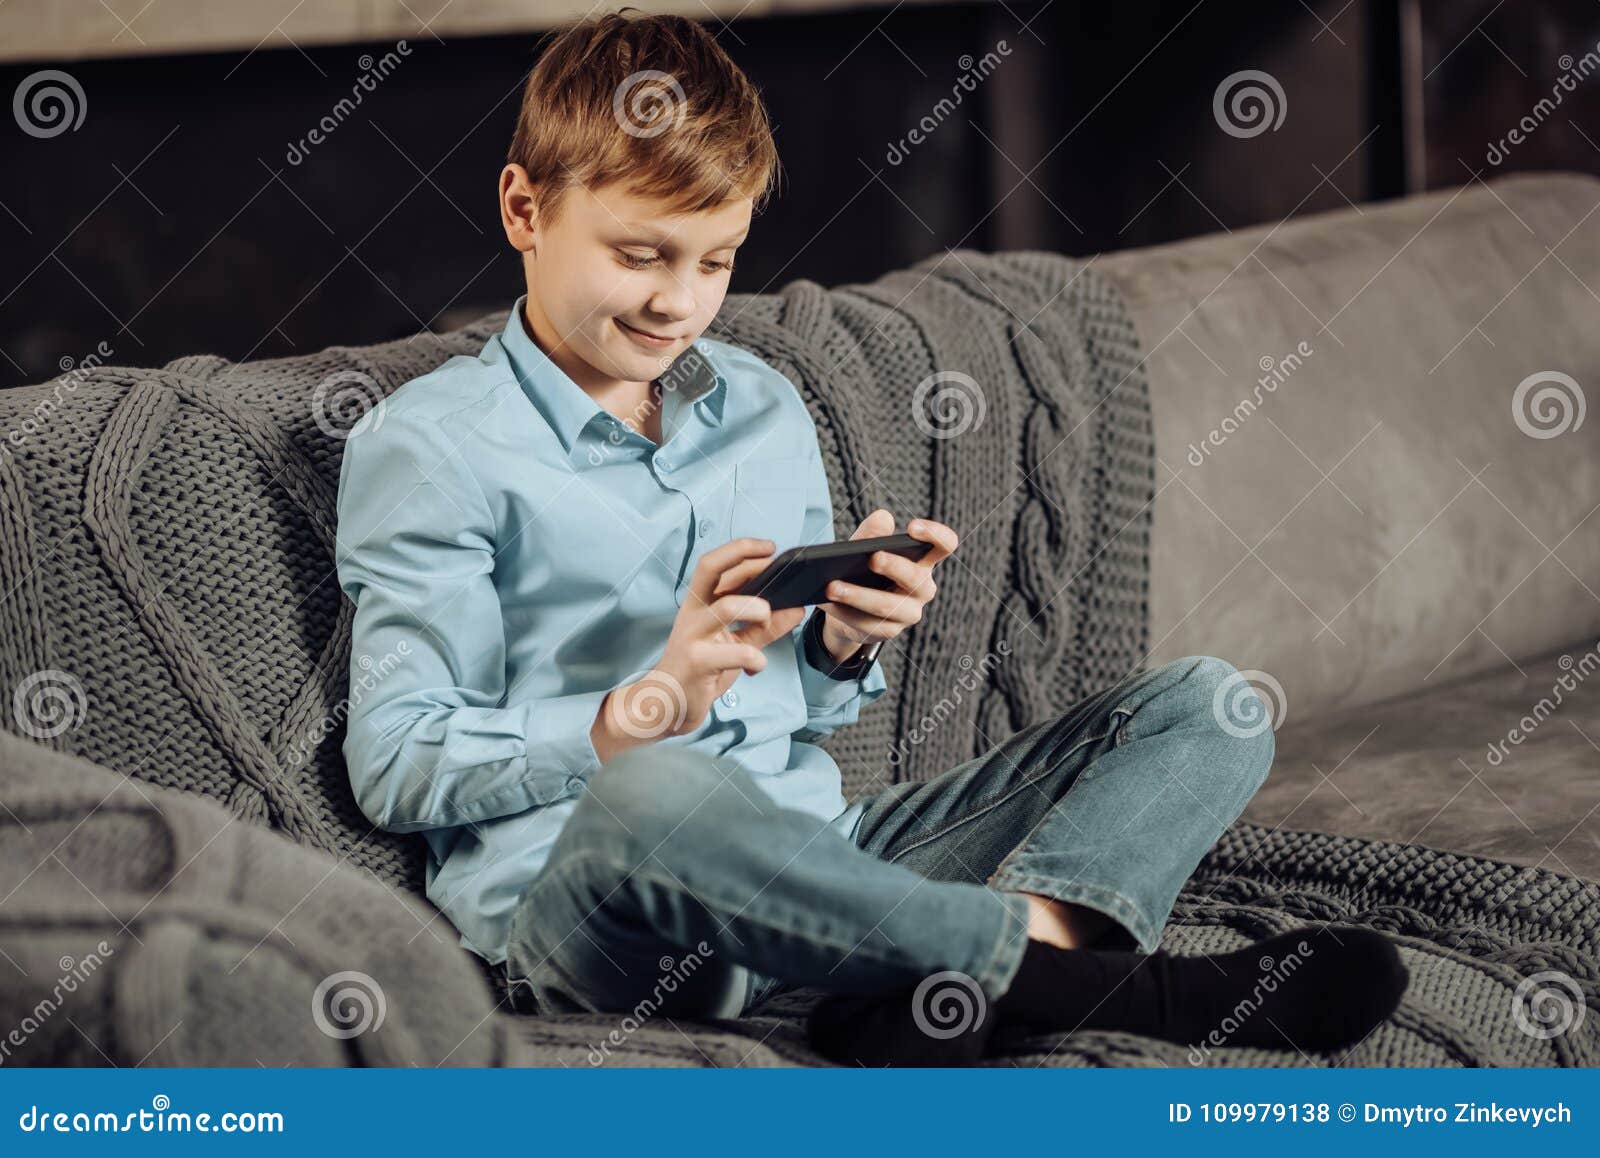 Мальчик сидит в телефоне. Диван для подростка. Мальчик сидит на диване. Подросток сидит на диване.